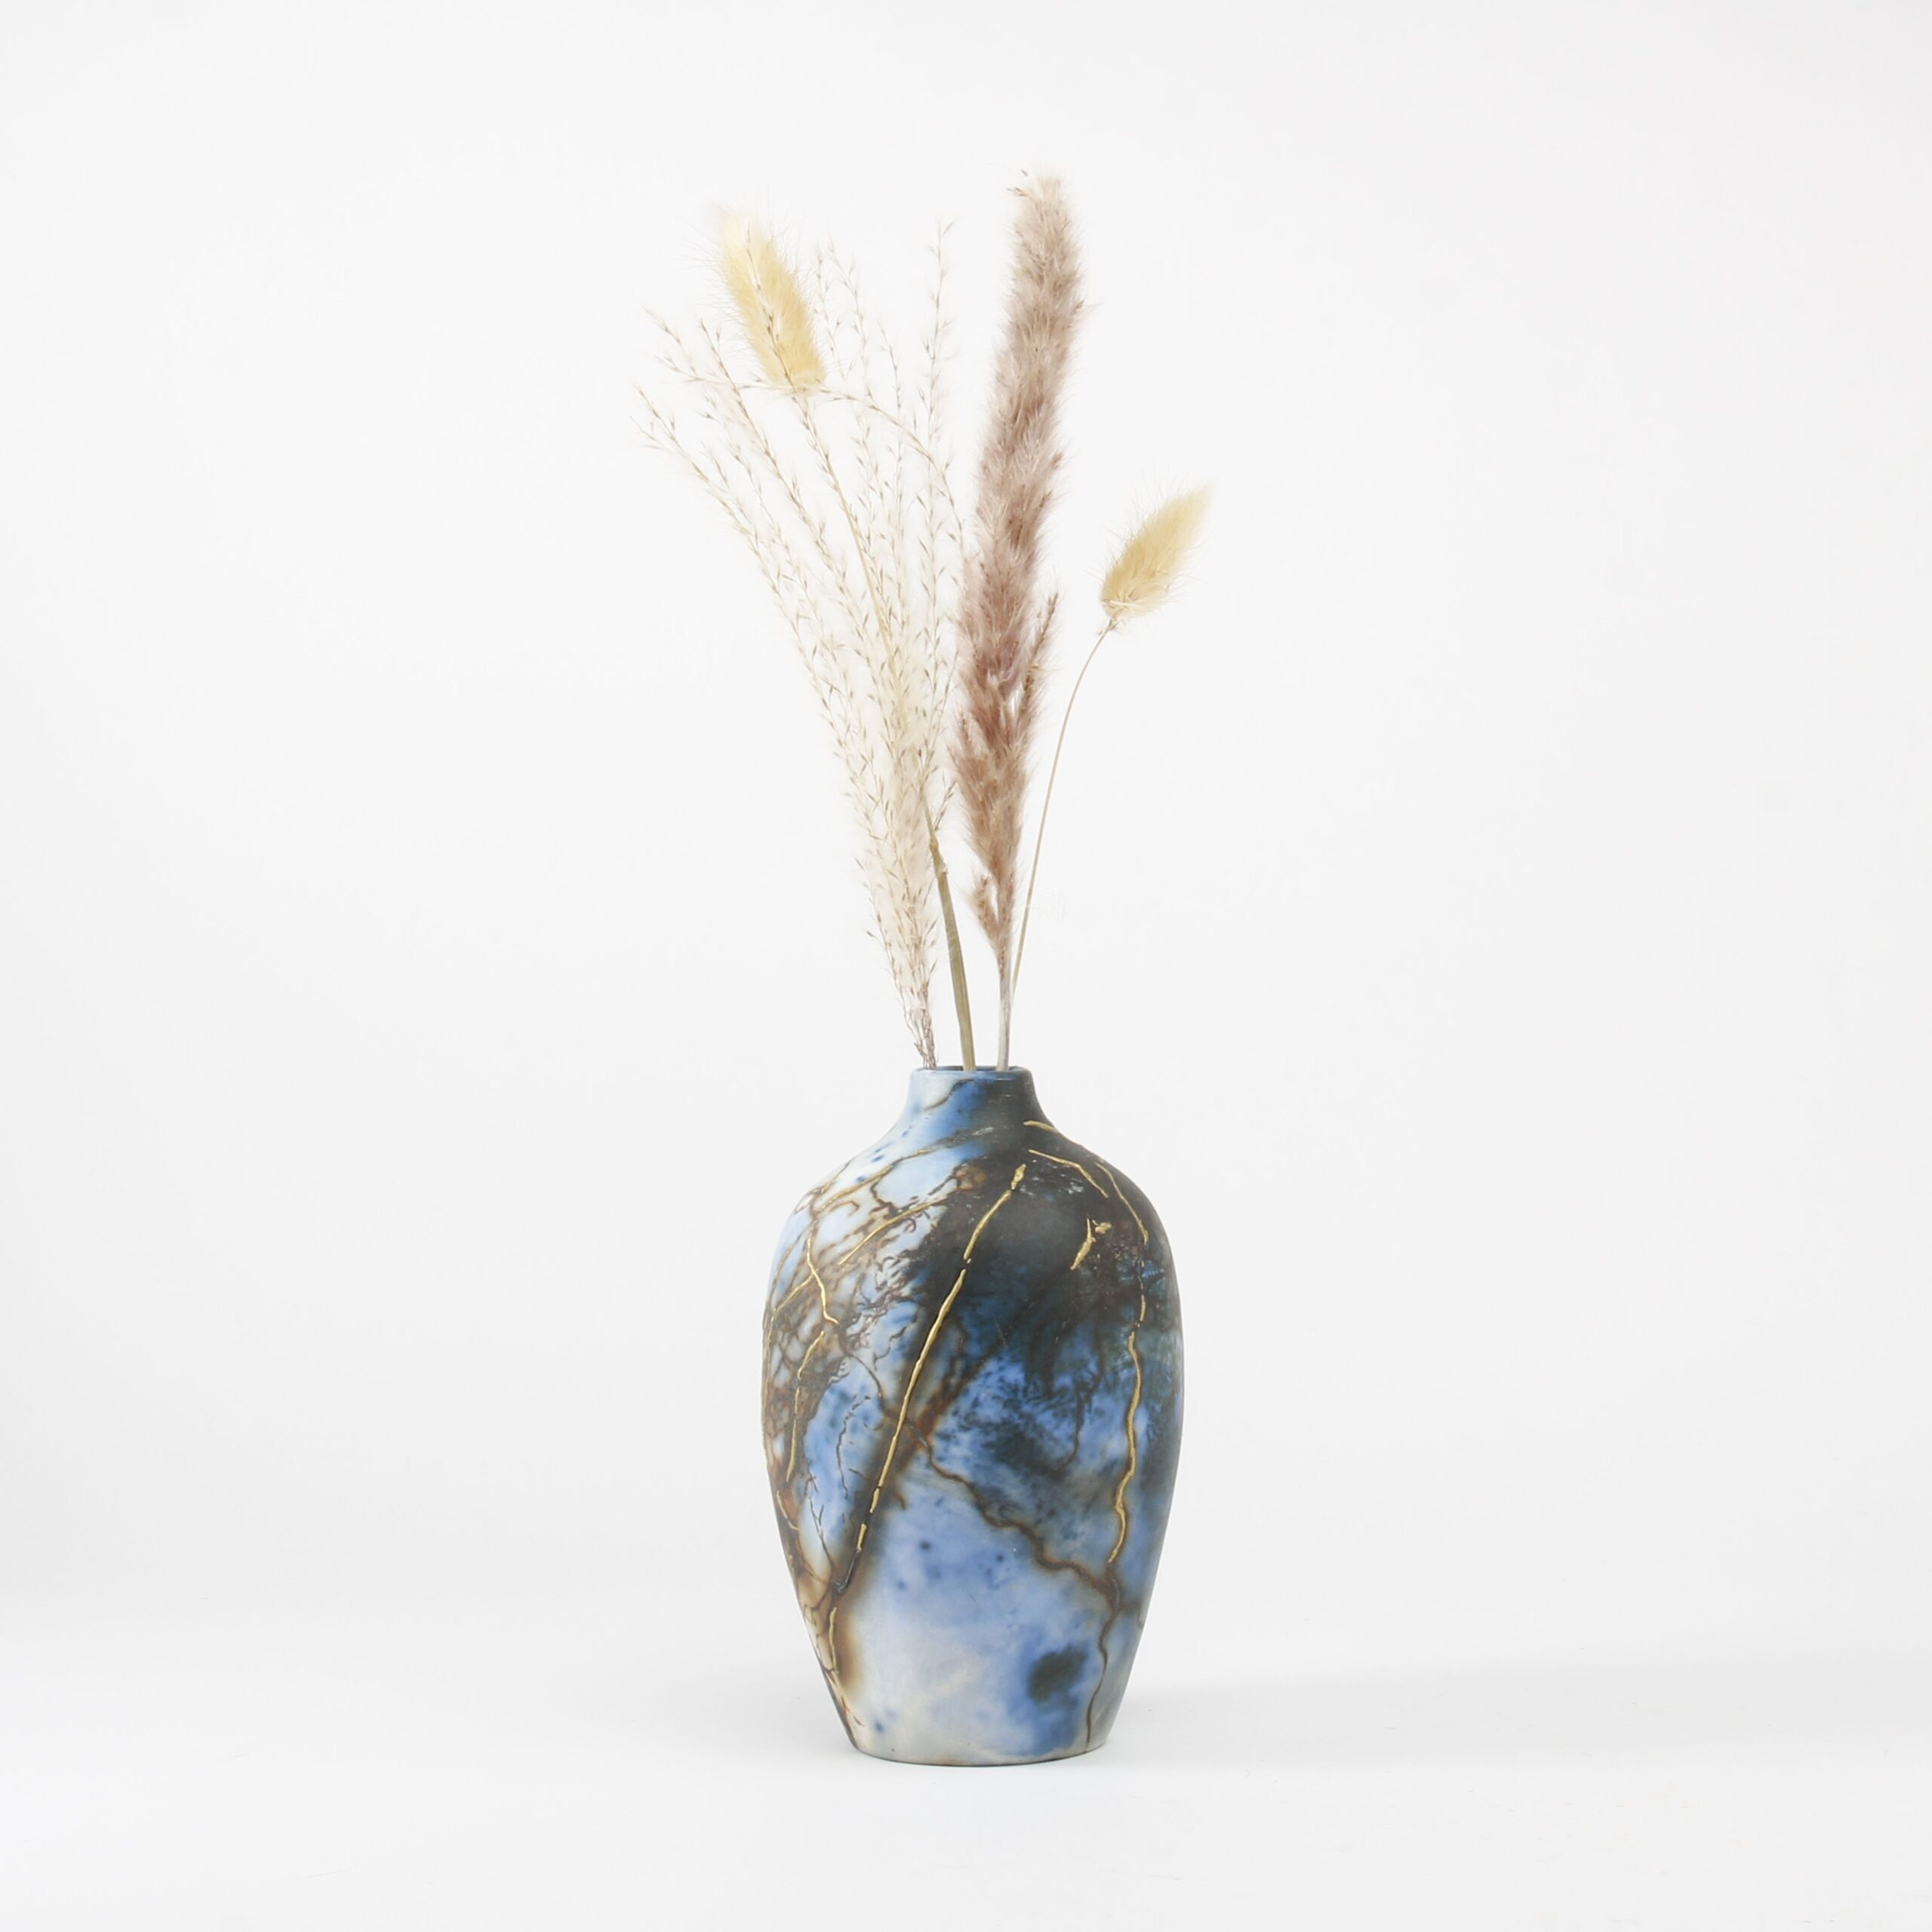 Alison Brannen: Medium Classic Urn Product Image 2 of 5